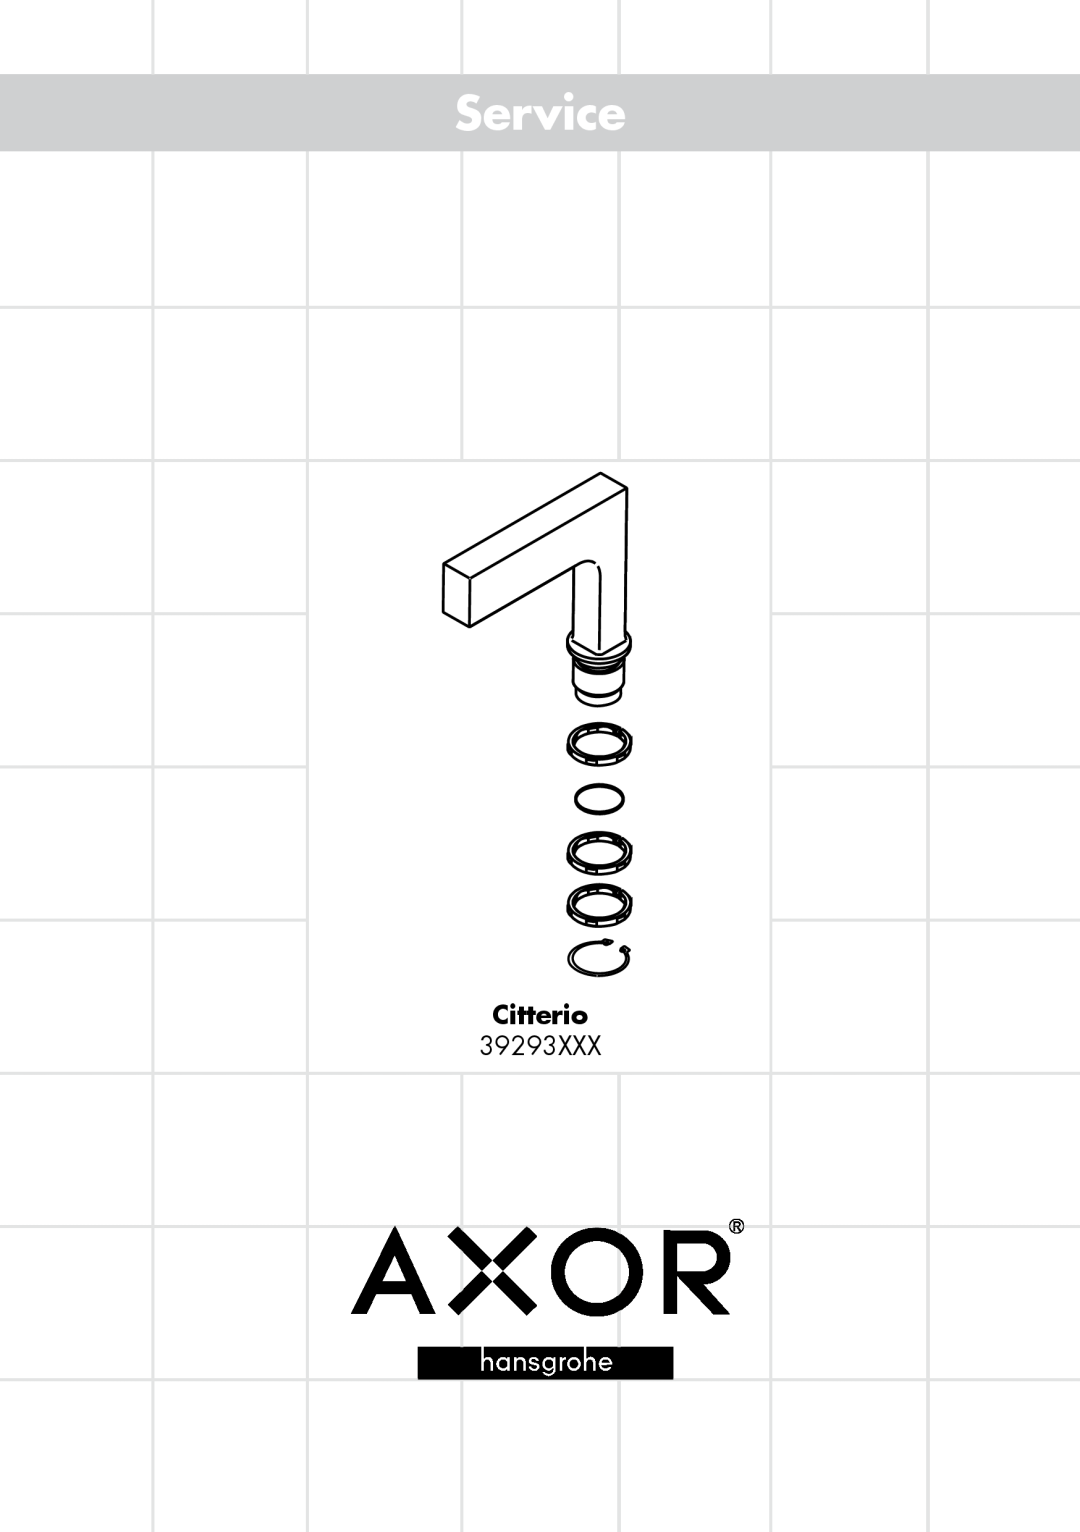 Axor 39293XXX manual Service, Citterio 